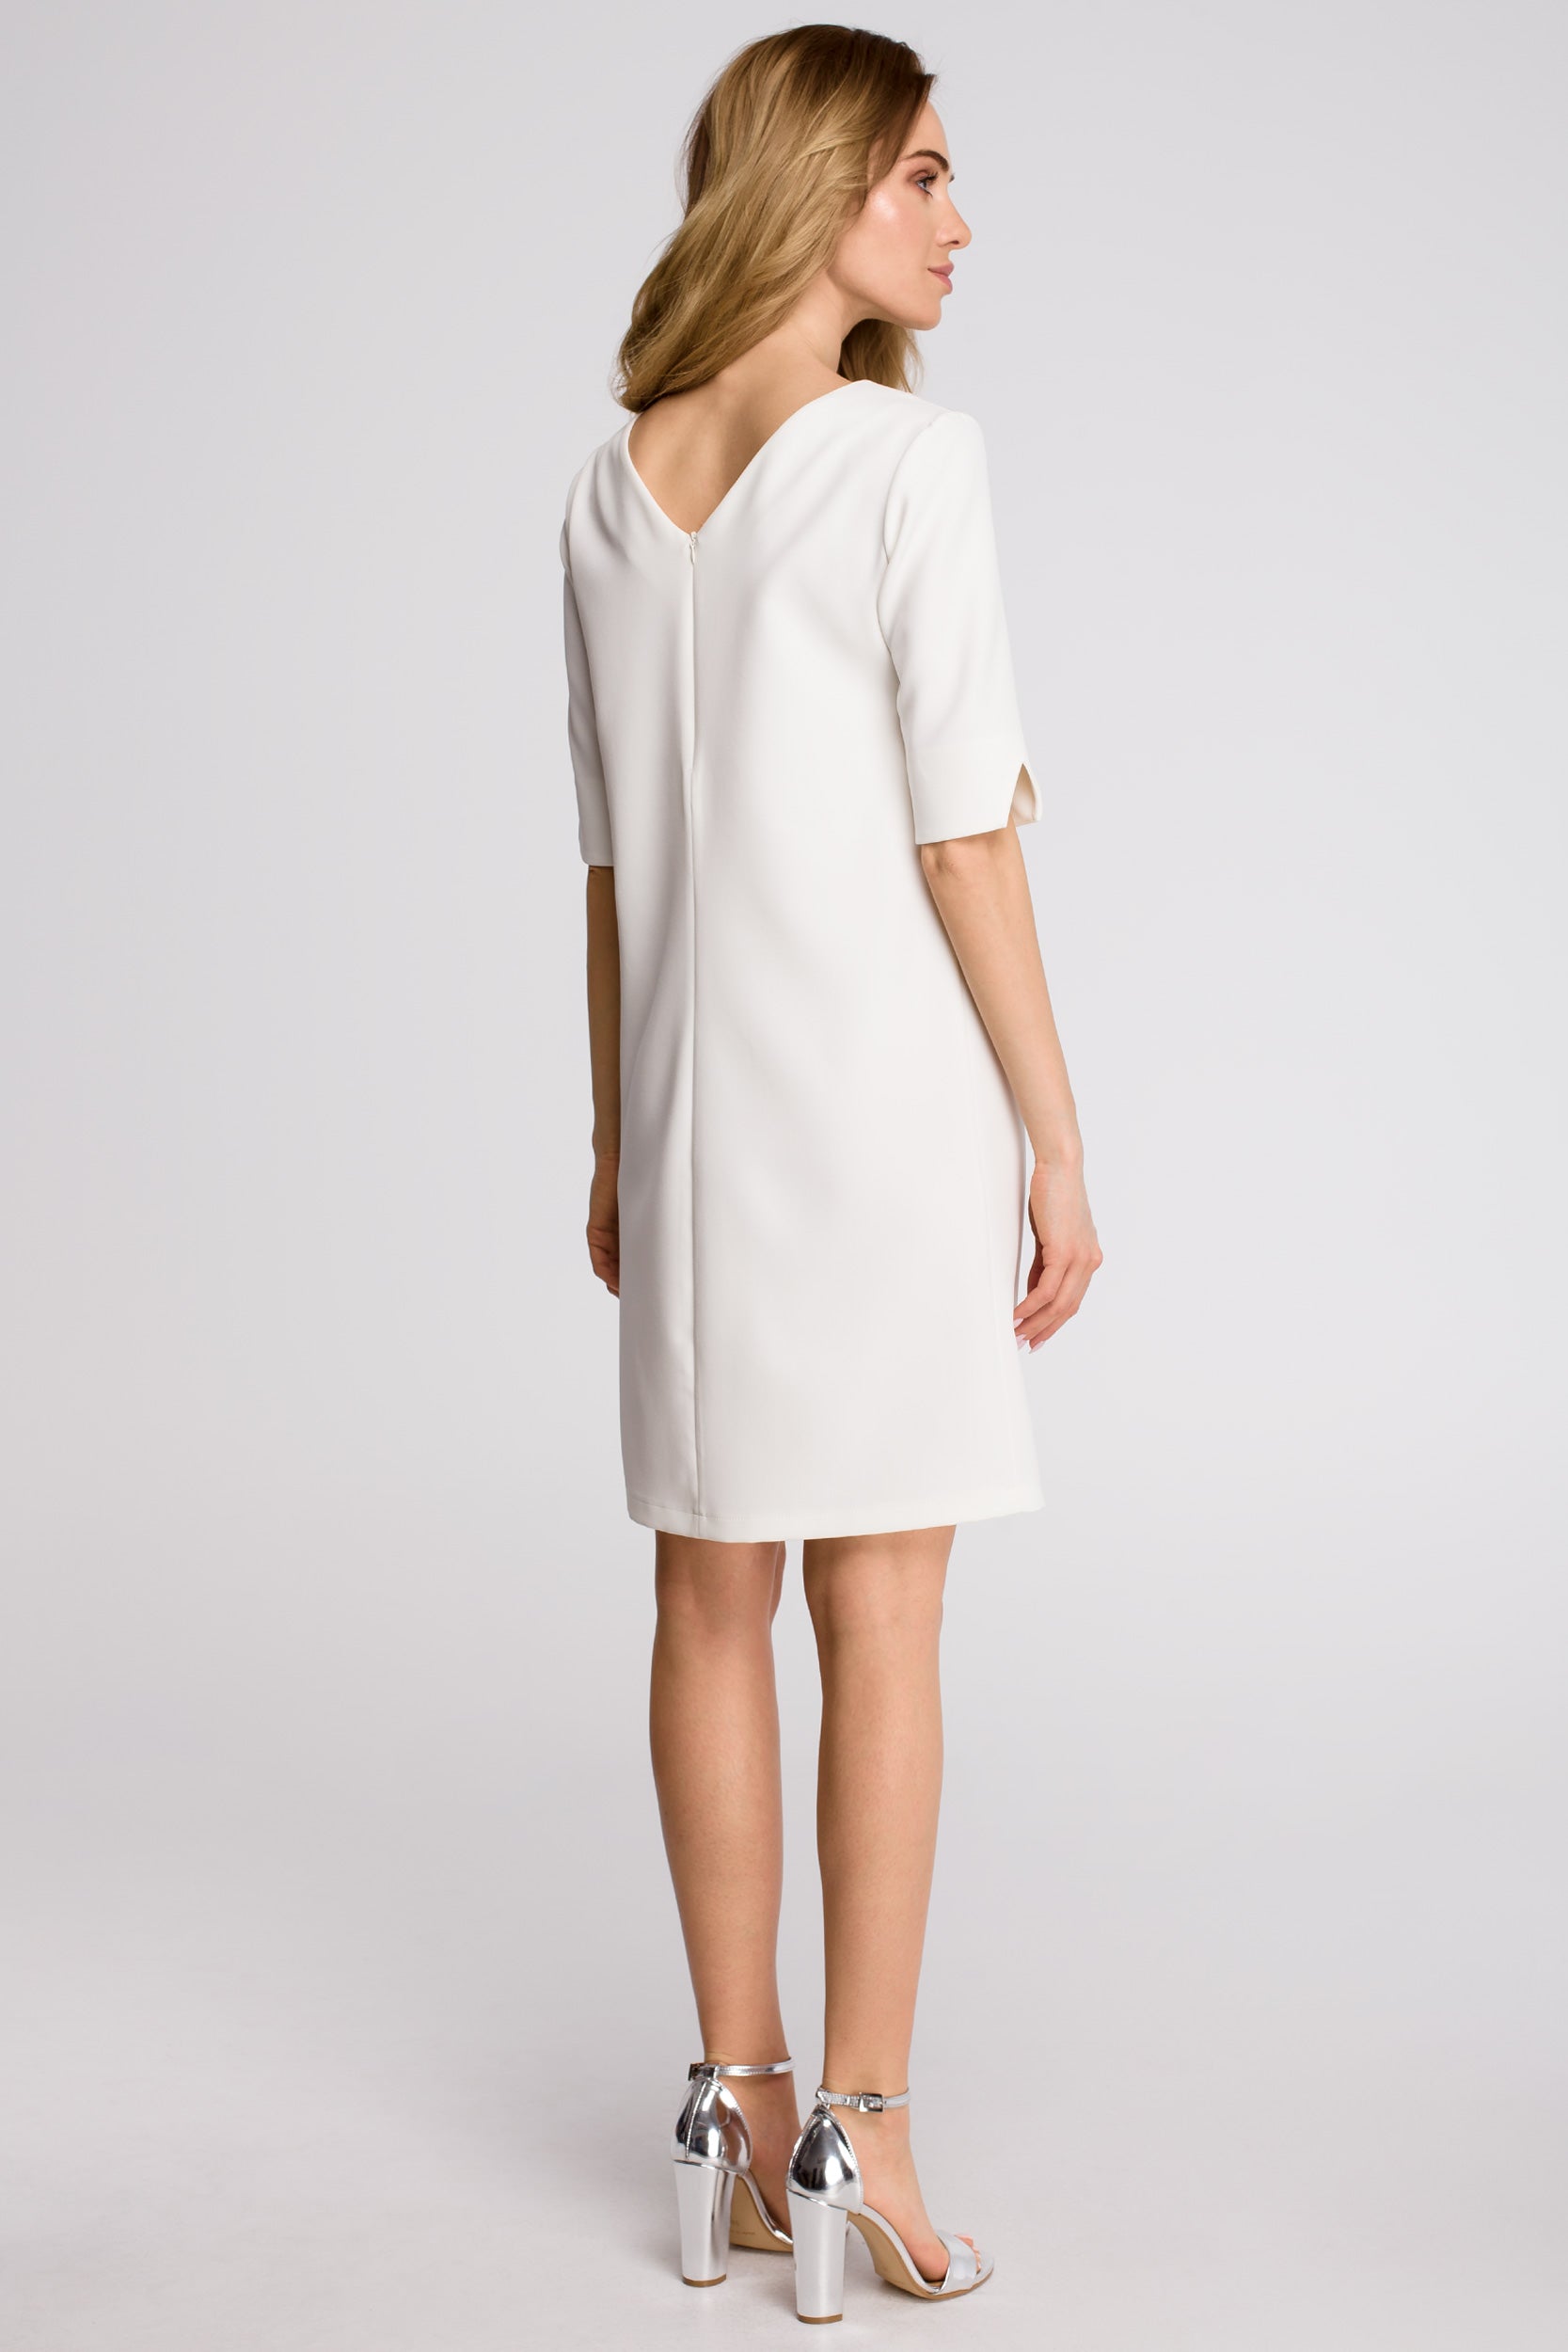 Minimalist Formal Mini Dress White